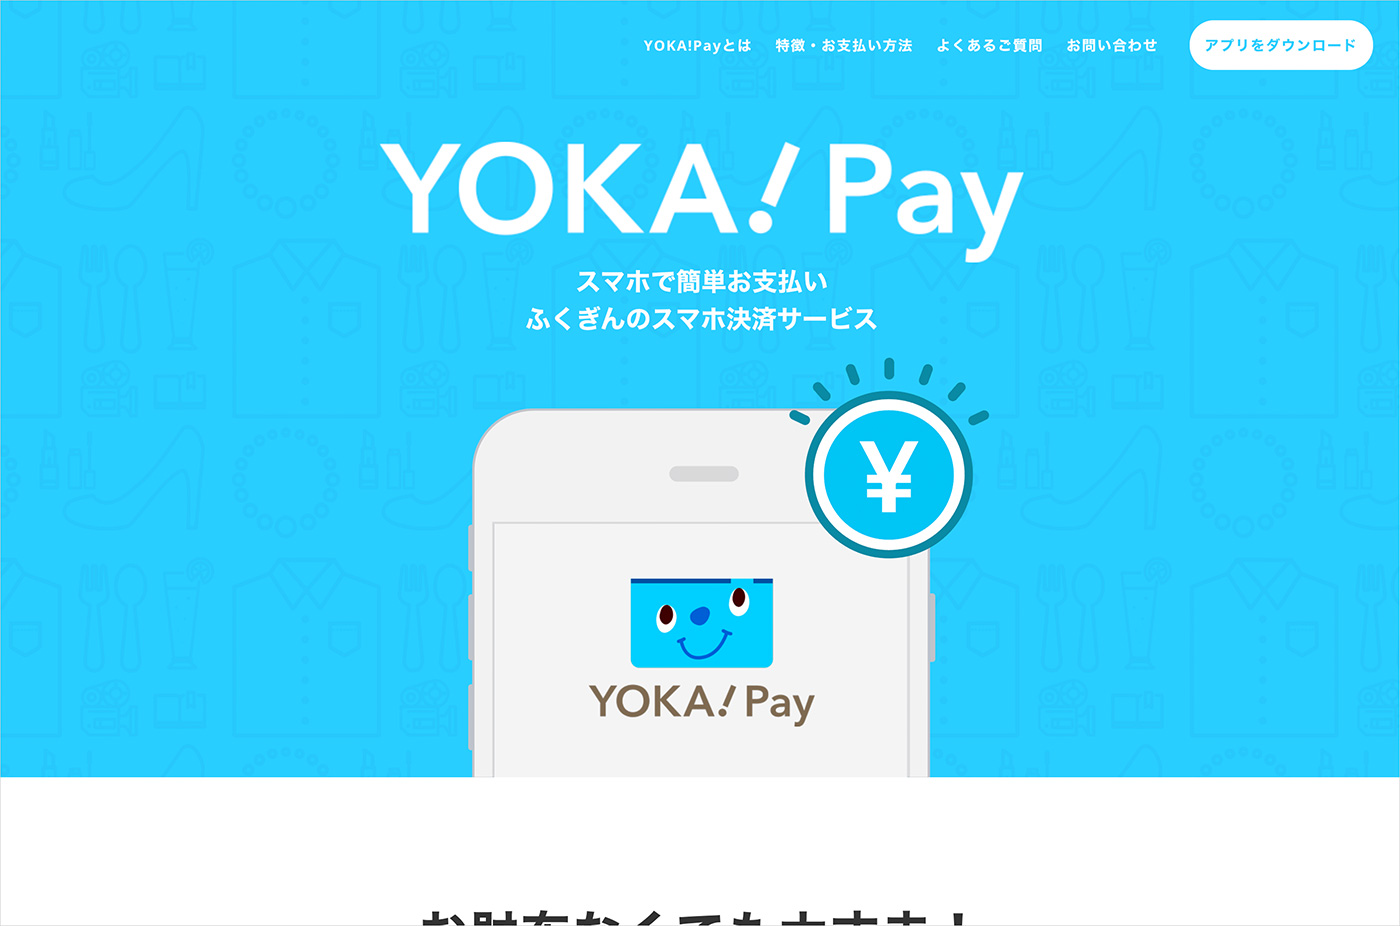 Yoka Pay 個人のお客さま 商品 サービス一覧 福岡銀行 Webデザイナー コーダー エンジニアのwebデザイン ギャラリー Good Web Design